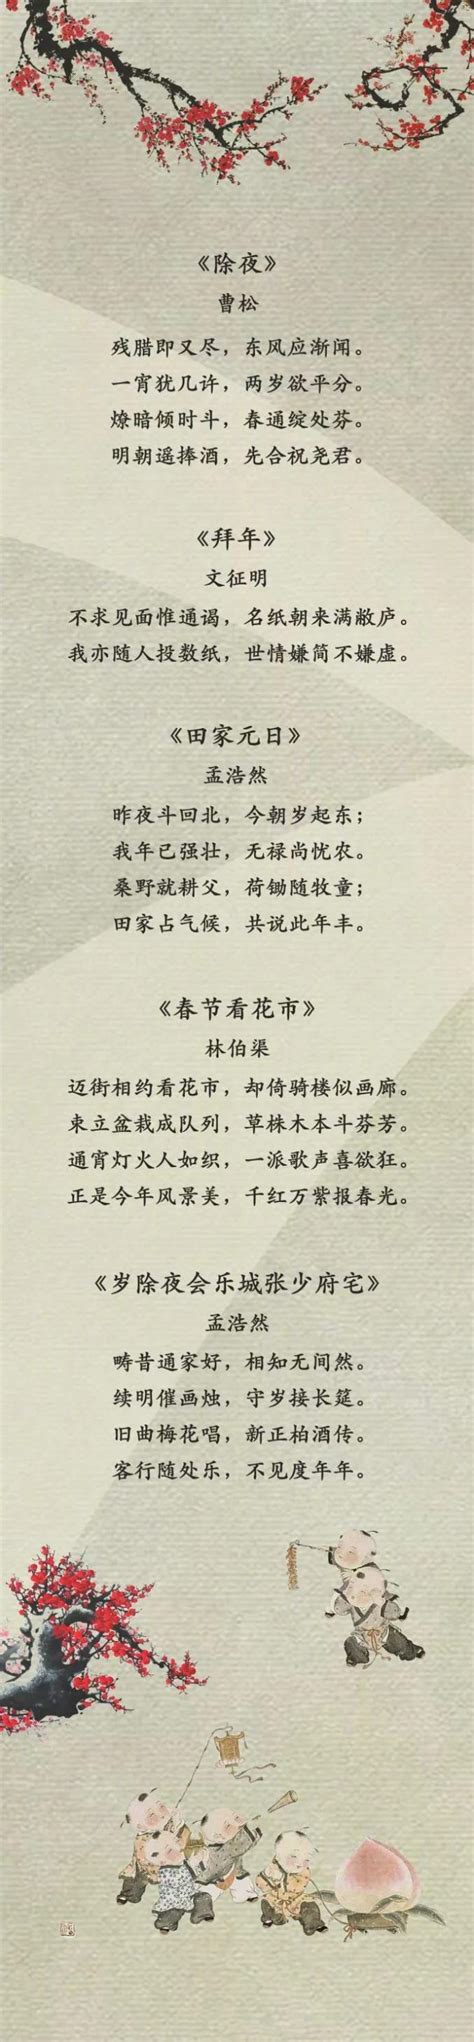 关于中国的诗词有哪些